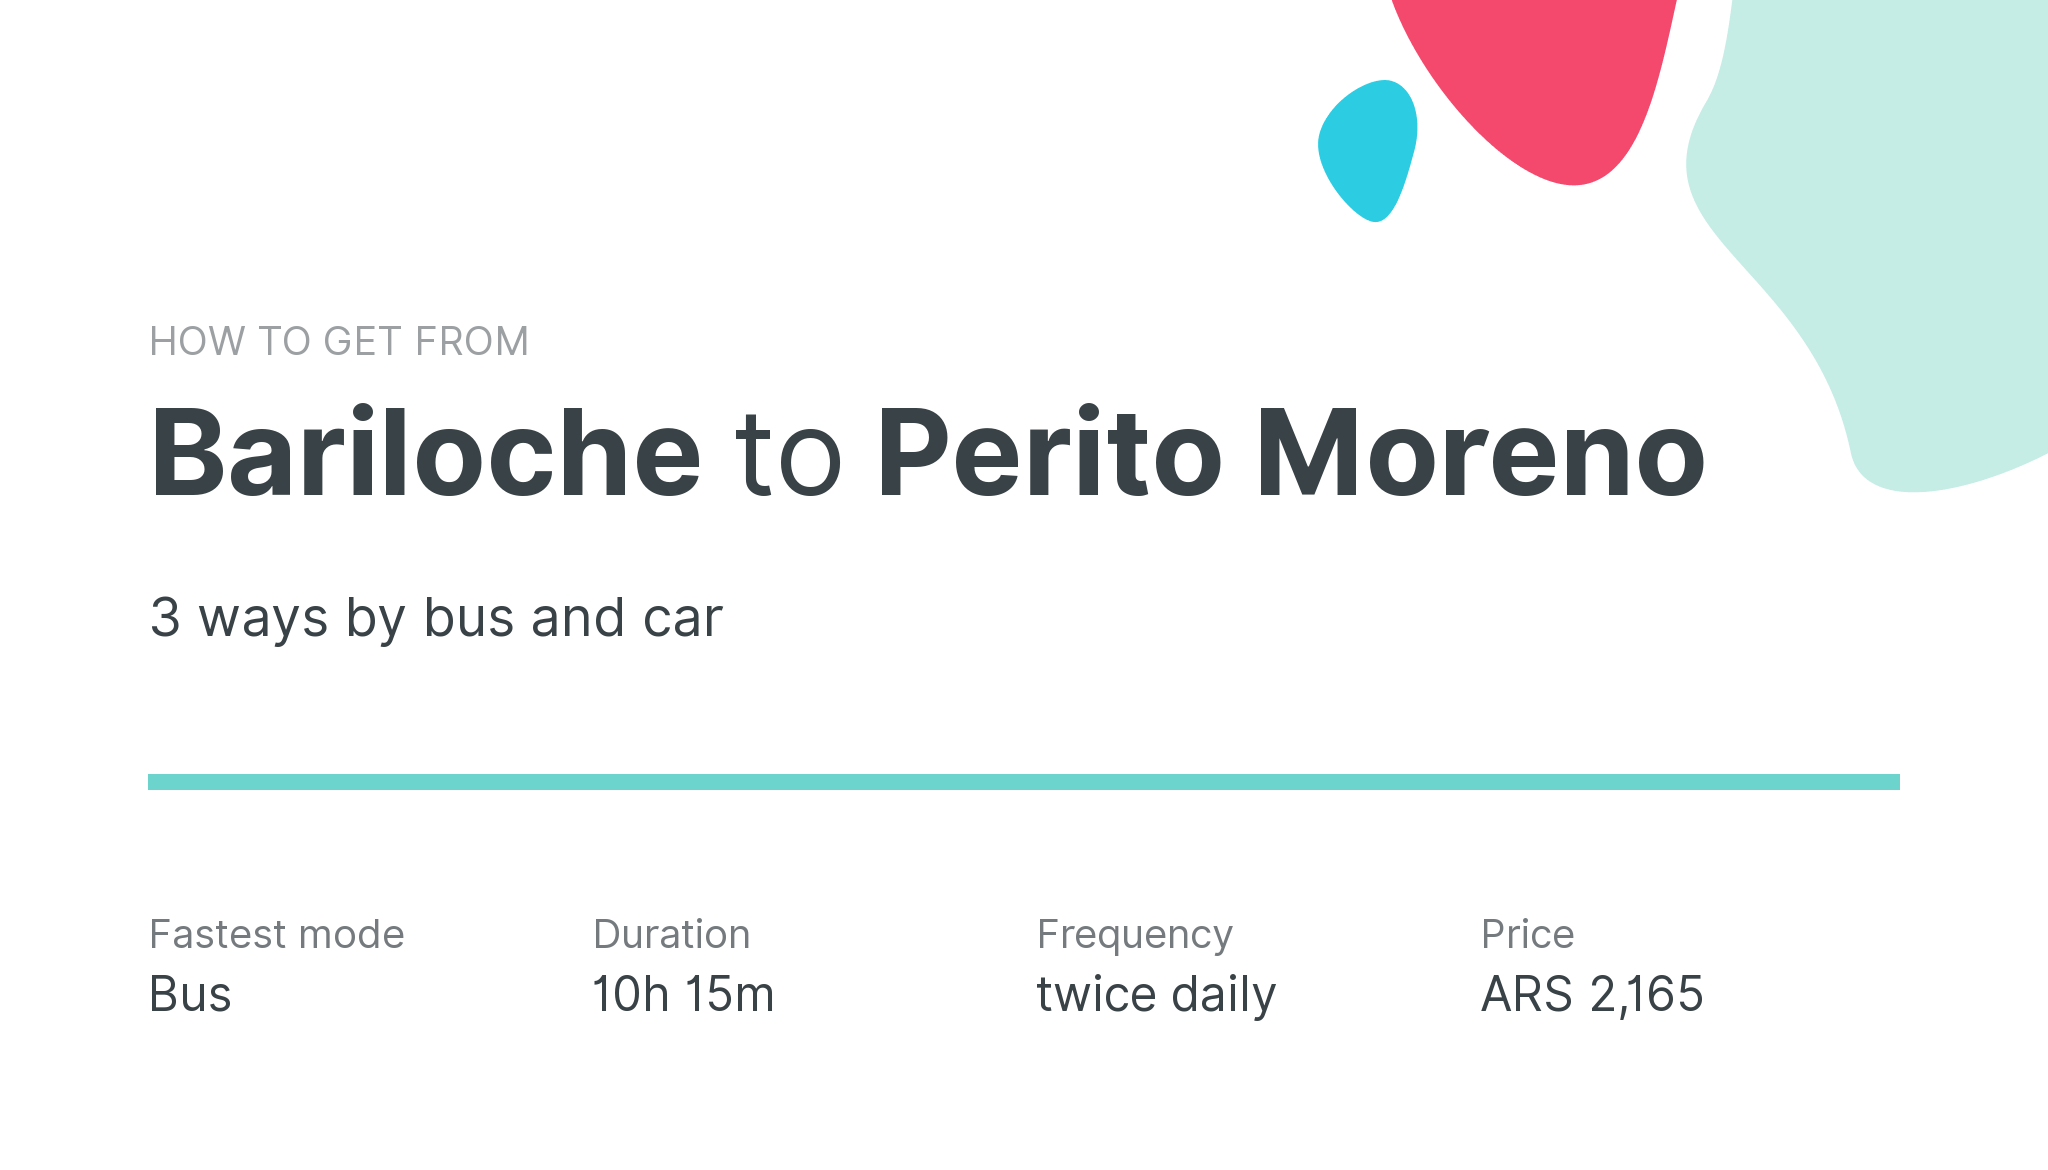 How do I get from Bariloche to Perito Moreno